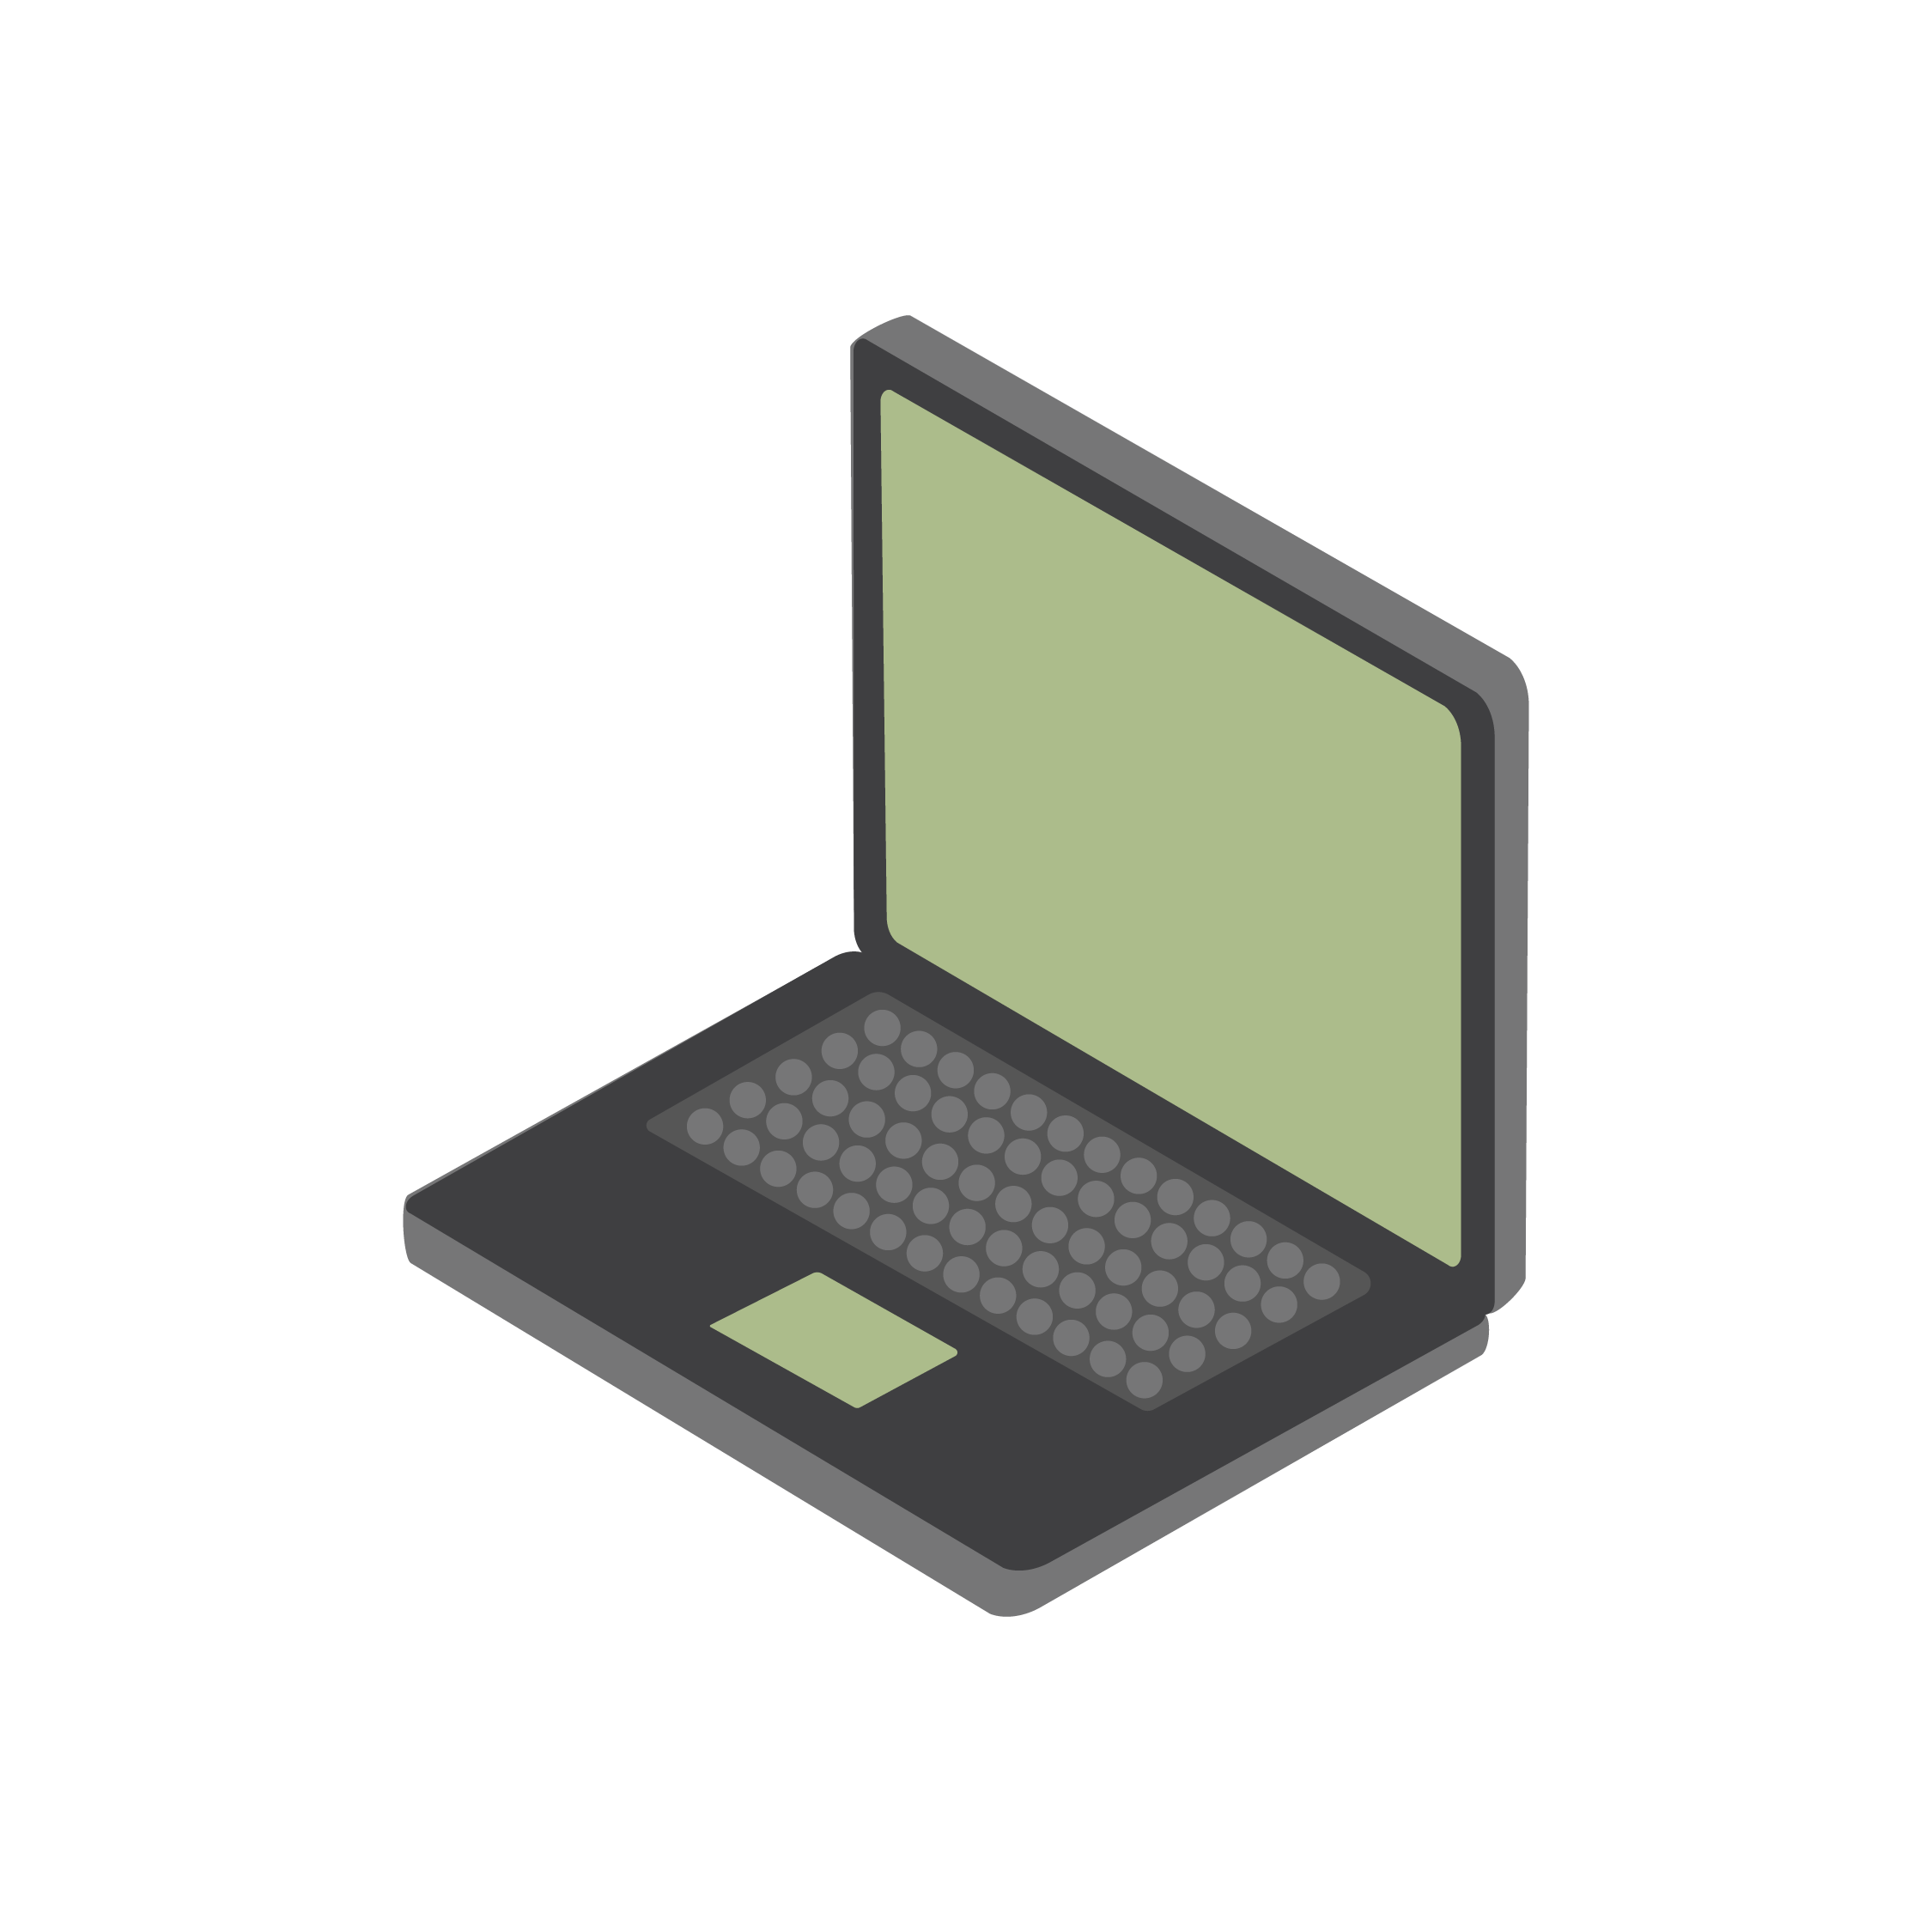 Ilustración de un ordenador portátil.